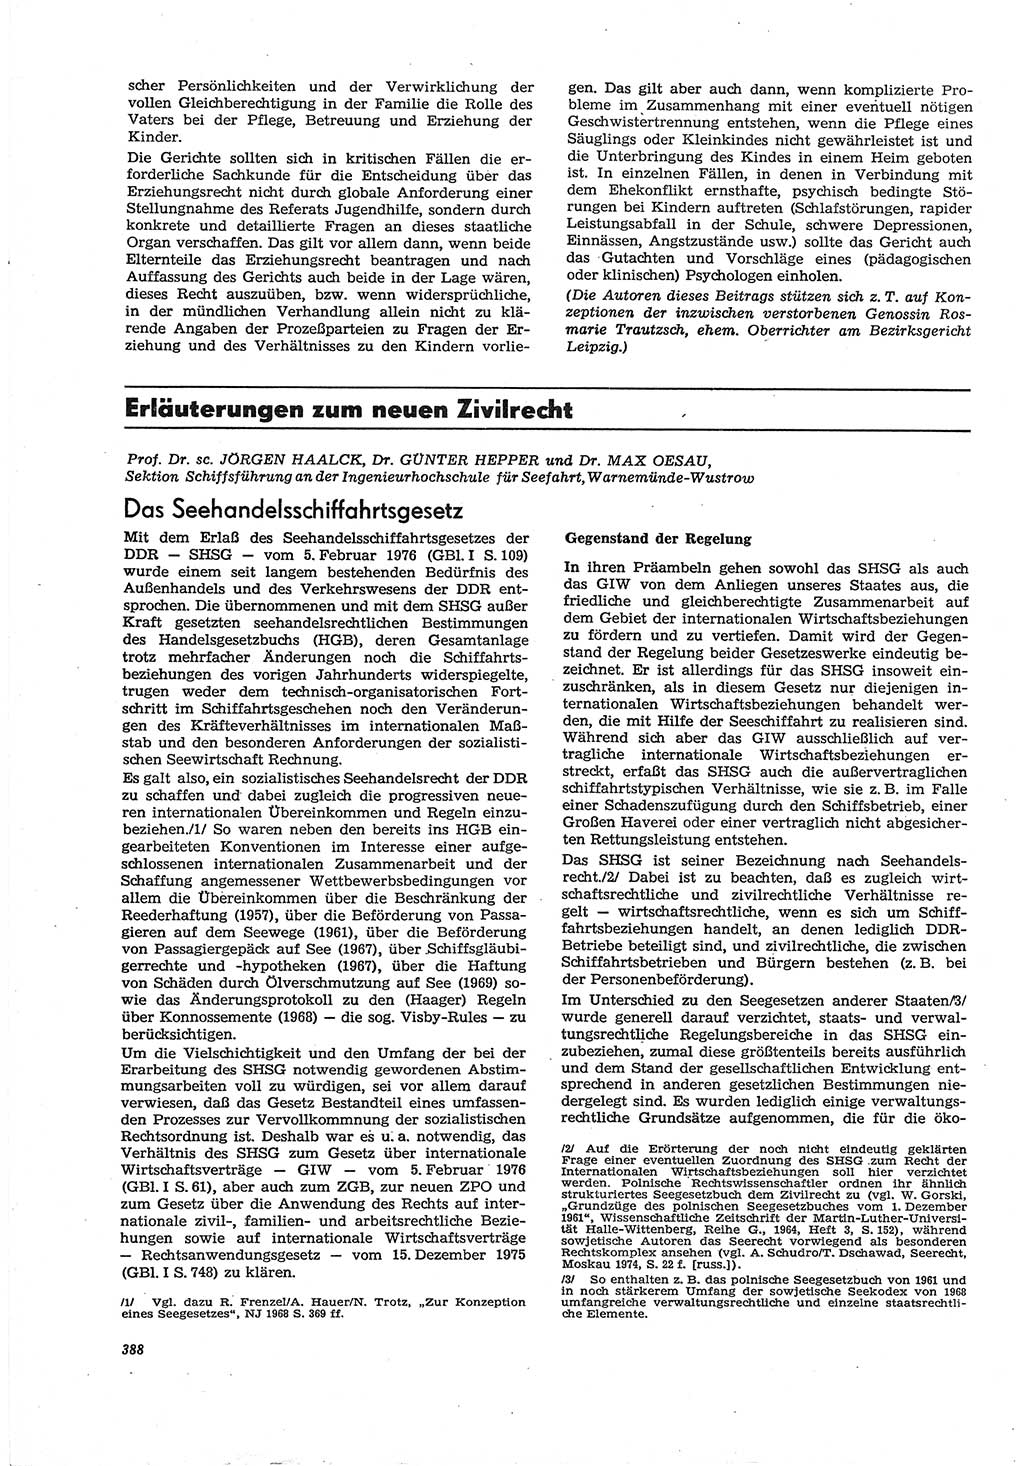 Neue Justiz (NJ), Zeitschrift für Recht und Rechtswissenschaft [Deutsche Demokratische Republik (DDR)], 30. Jahrgang 1976, Seite 388 (NJ DDR 1976, S. 388)